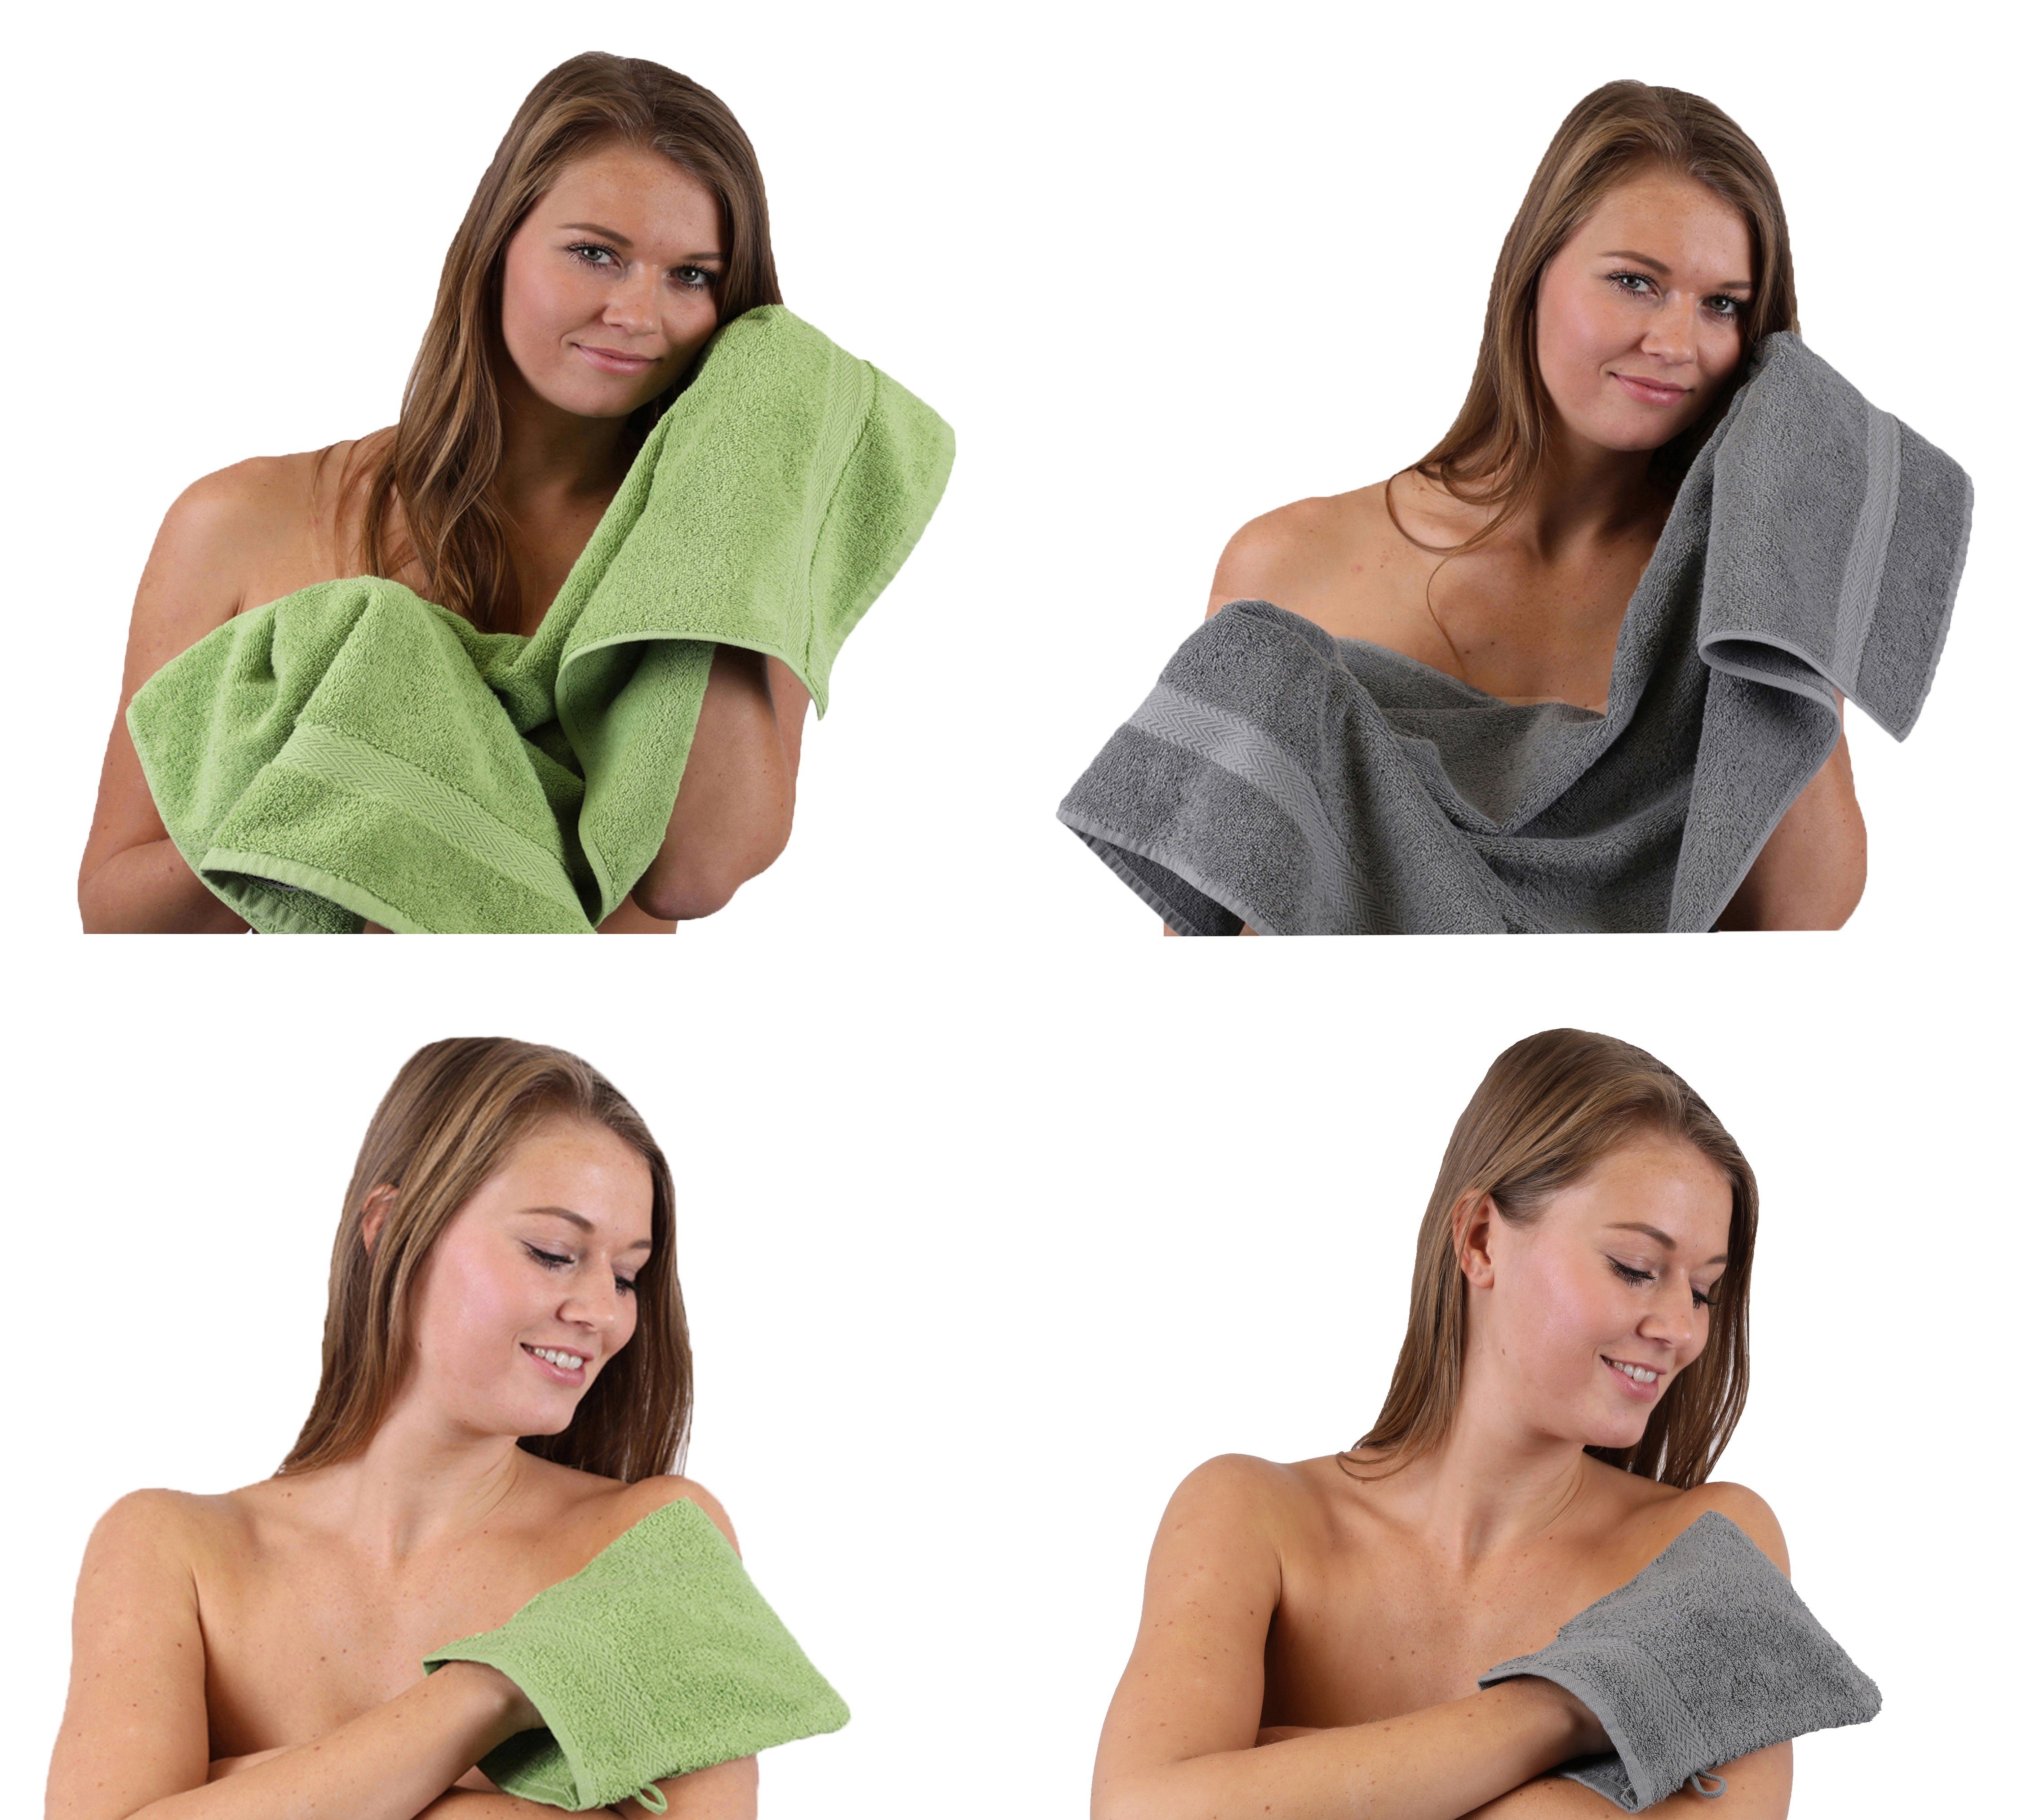 Pack TLG. anthrazit 2 100% 2 Set 4 Happy Baumwolle apfelgrün Set Baumwolle Handtuch - Waschhandschuhe, grau 100% Handtuch Handtücher Betz